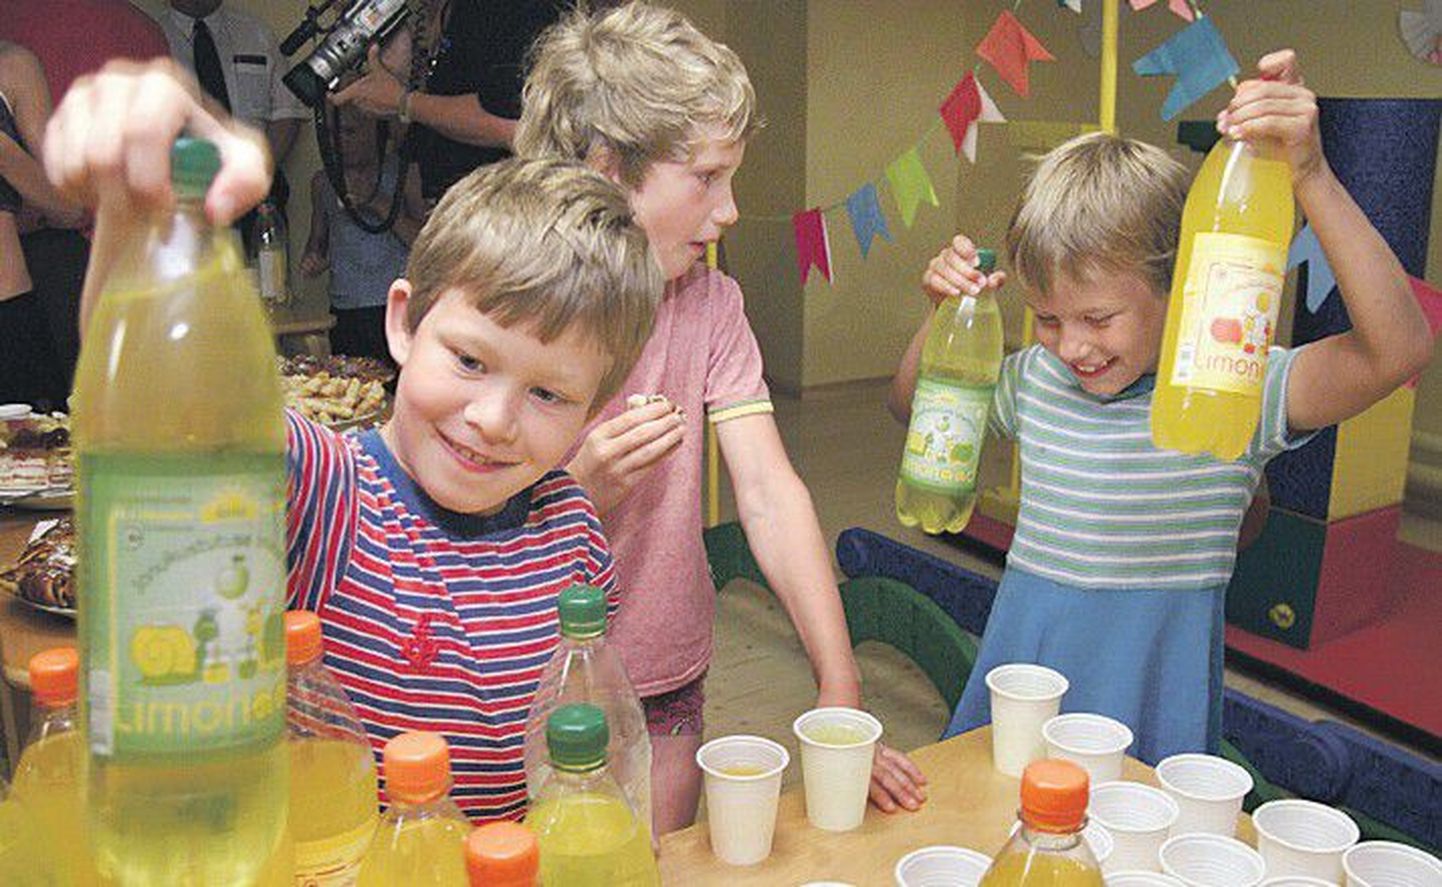 Несмотря на то, что в Эстонии дети потребляют сладких прохладительных напитков меньше, чем в других странах, наши эксперты по вопросам питания тоже рекомендуют пить для утоления жажды не лимонад, а воду.